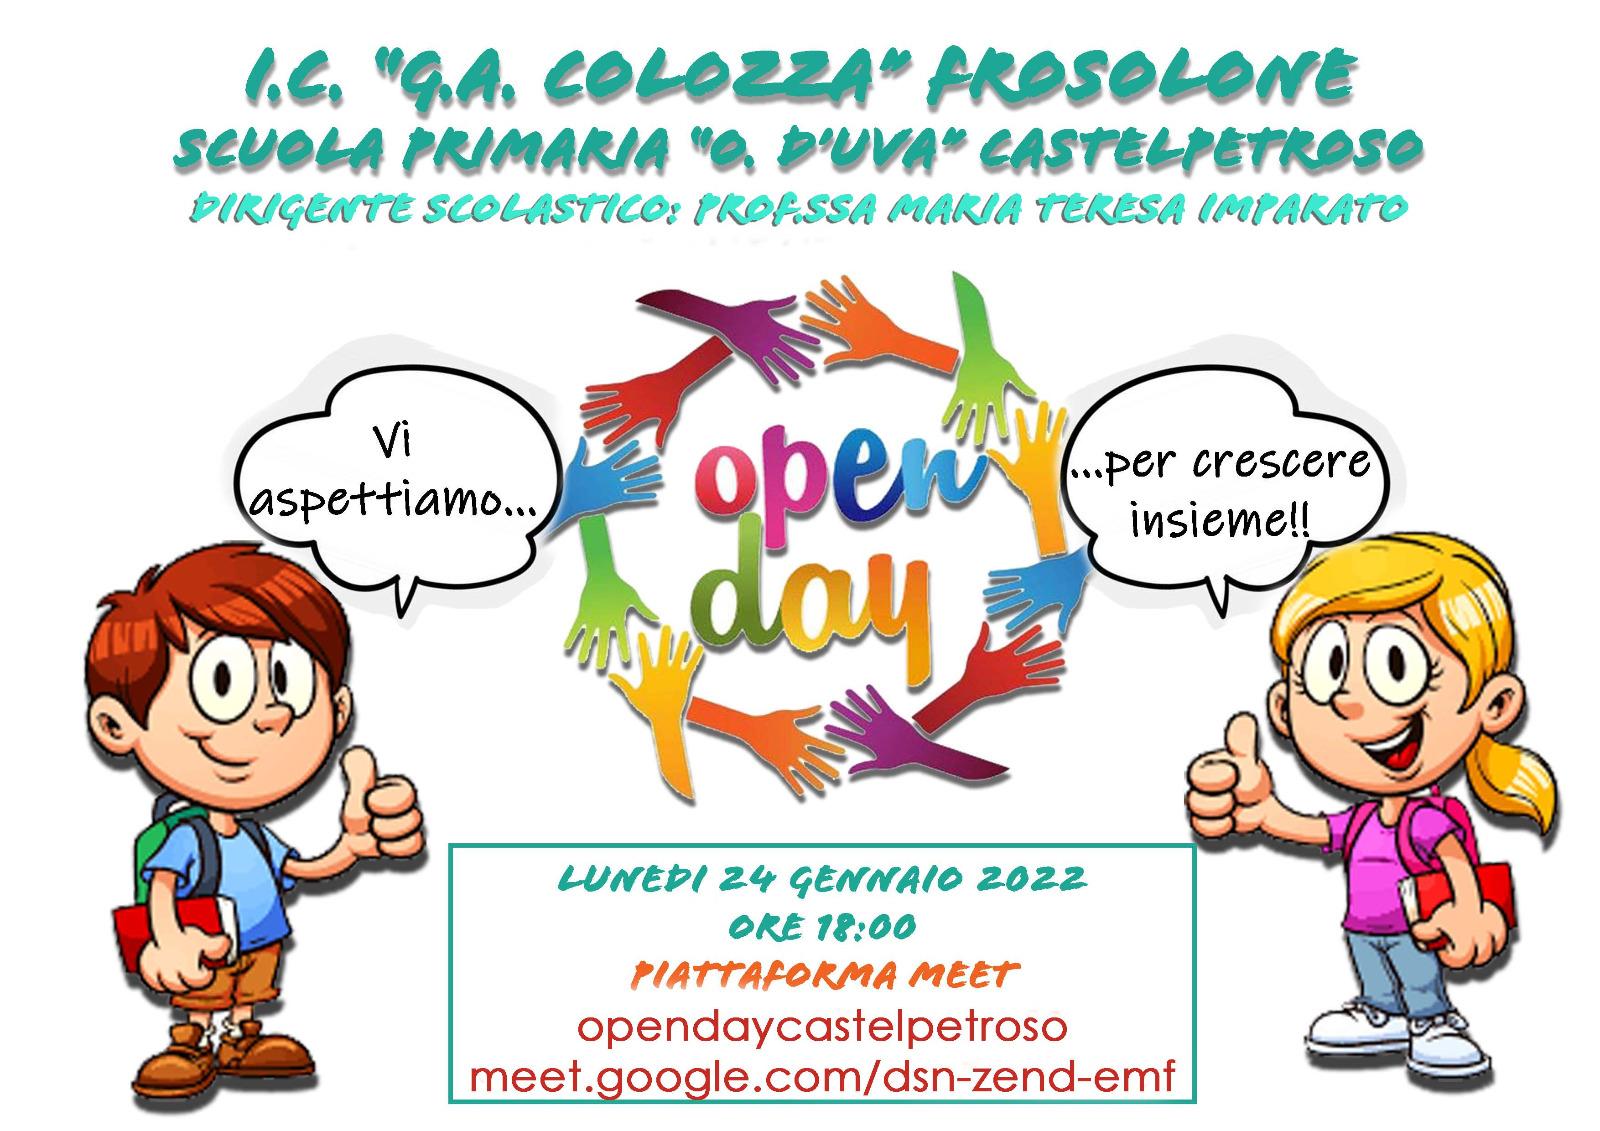 Al momento stai visualizzando Open Day Scuola Primaria “O. D’Uva” Castelpetroso